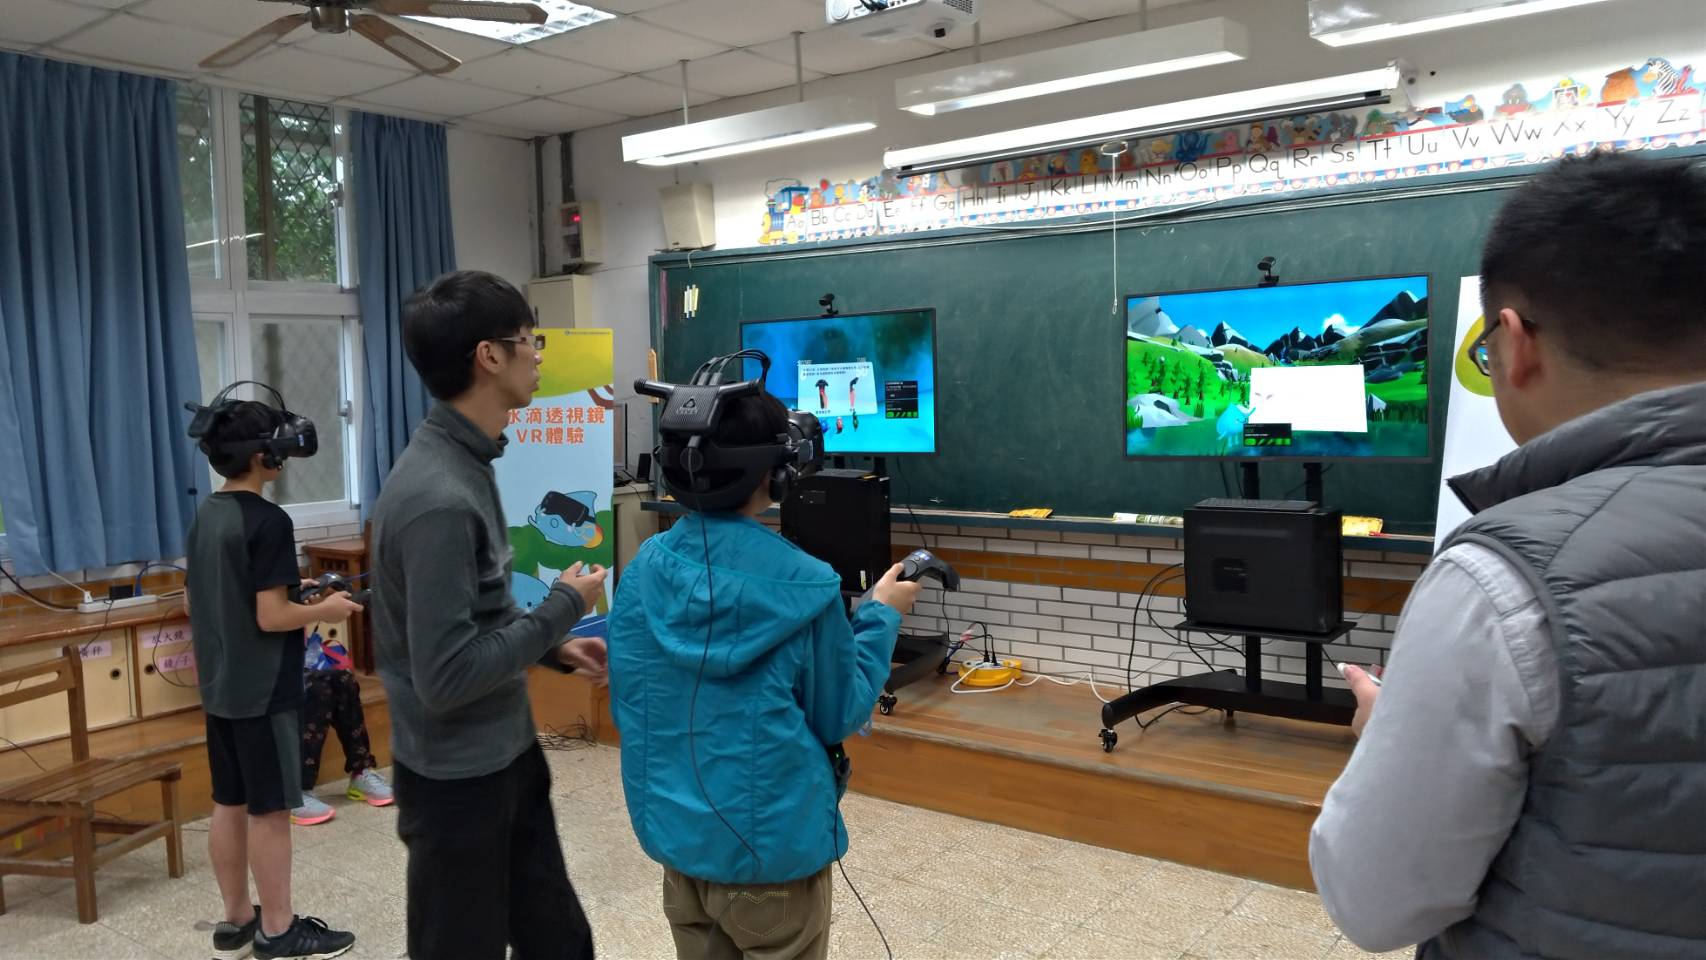 小朋友正在體驗新科技虛擬實境(VR)環境教育課程